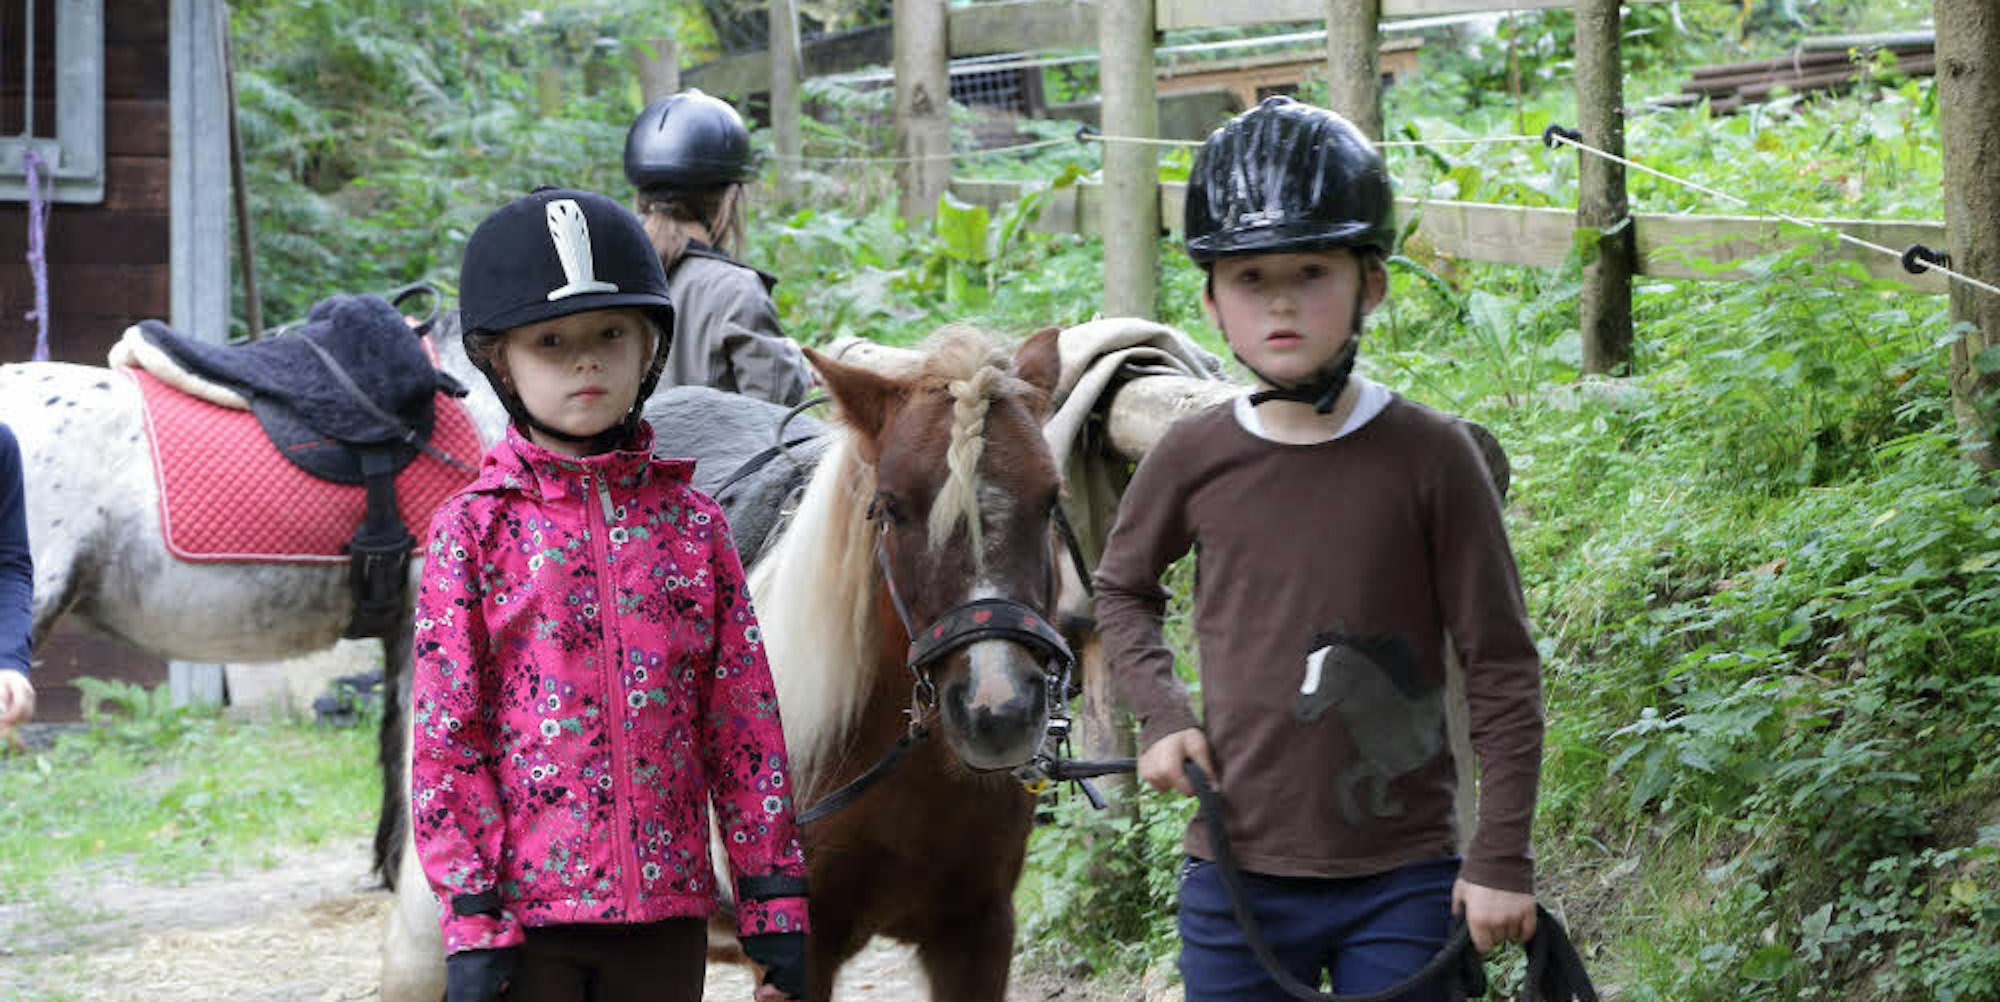 Vor allem an Kinder im Alter zwischen drei und sechs Jahren richten sich die Angebote des Ponyhofs Sonnenschein in Moitzfeld.